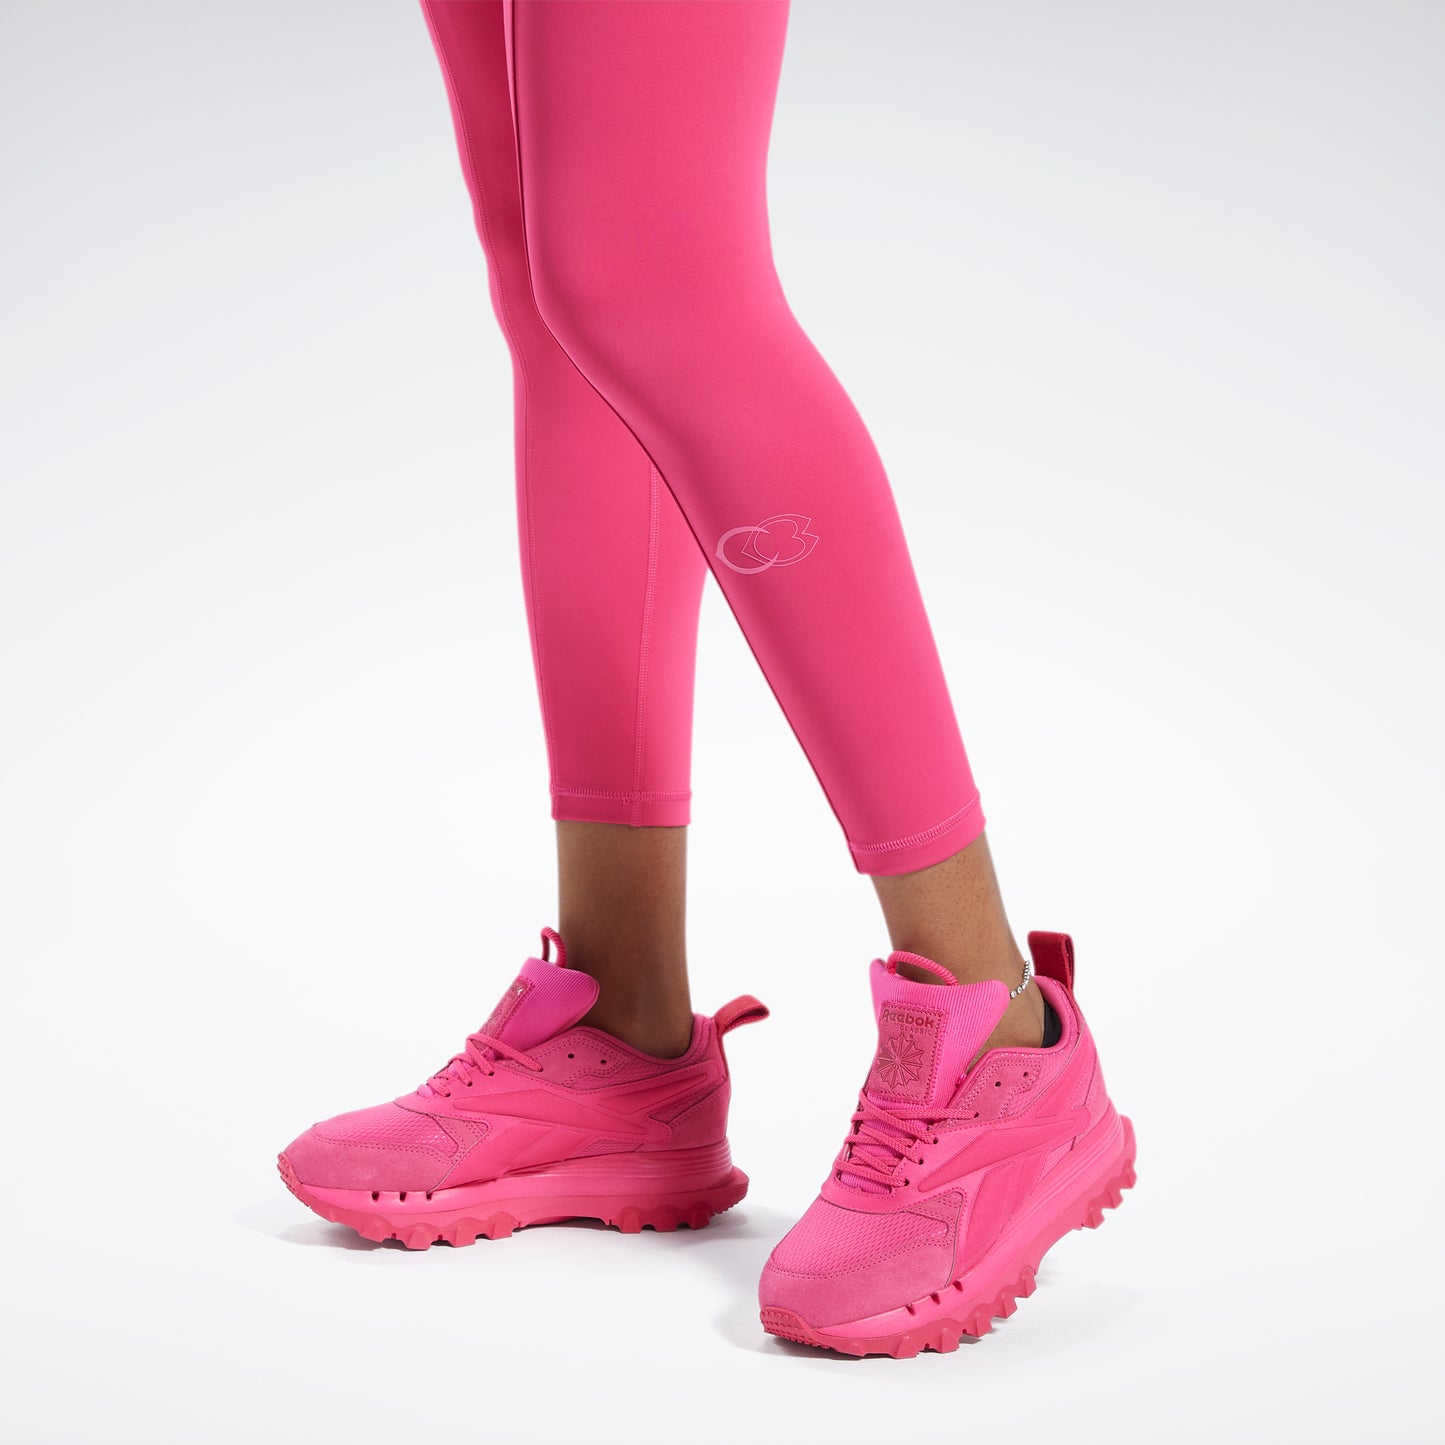 Reebok Cardi B 7/8 (Plus Size) Women's Leggings Black – Sports